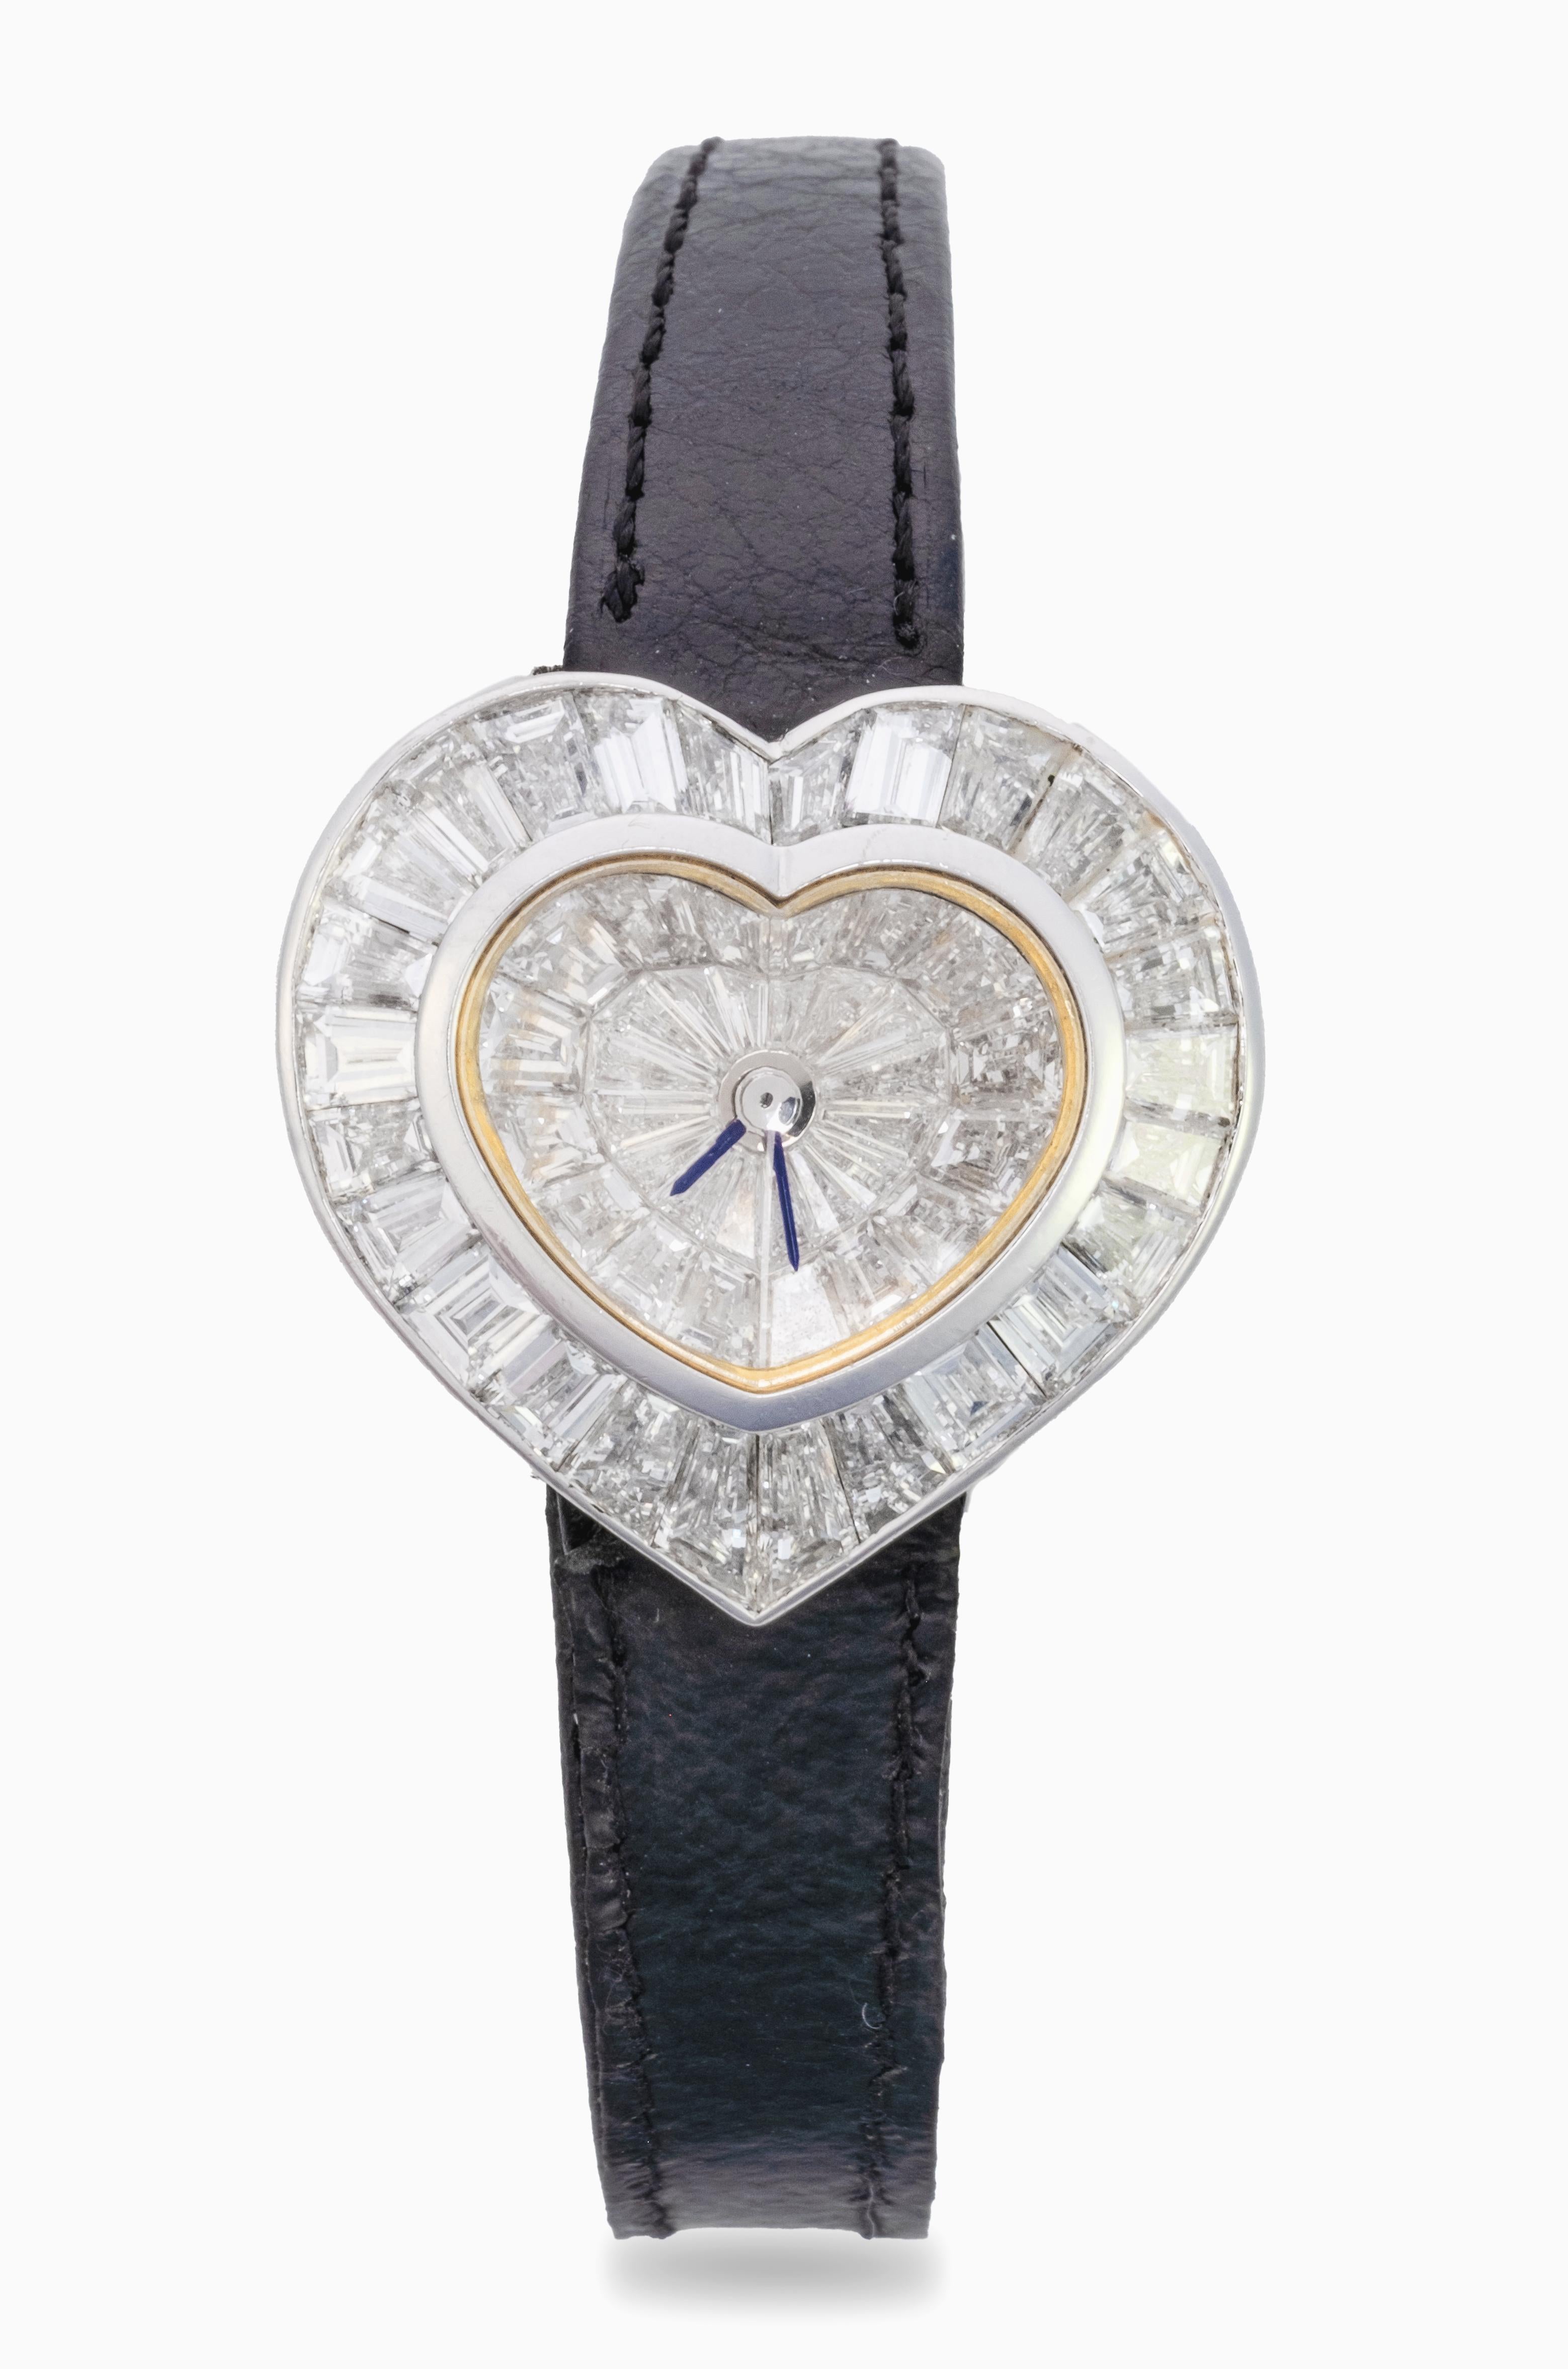 heart shaped wrist watch